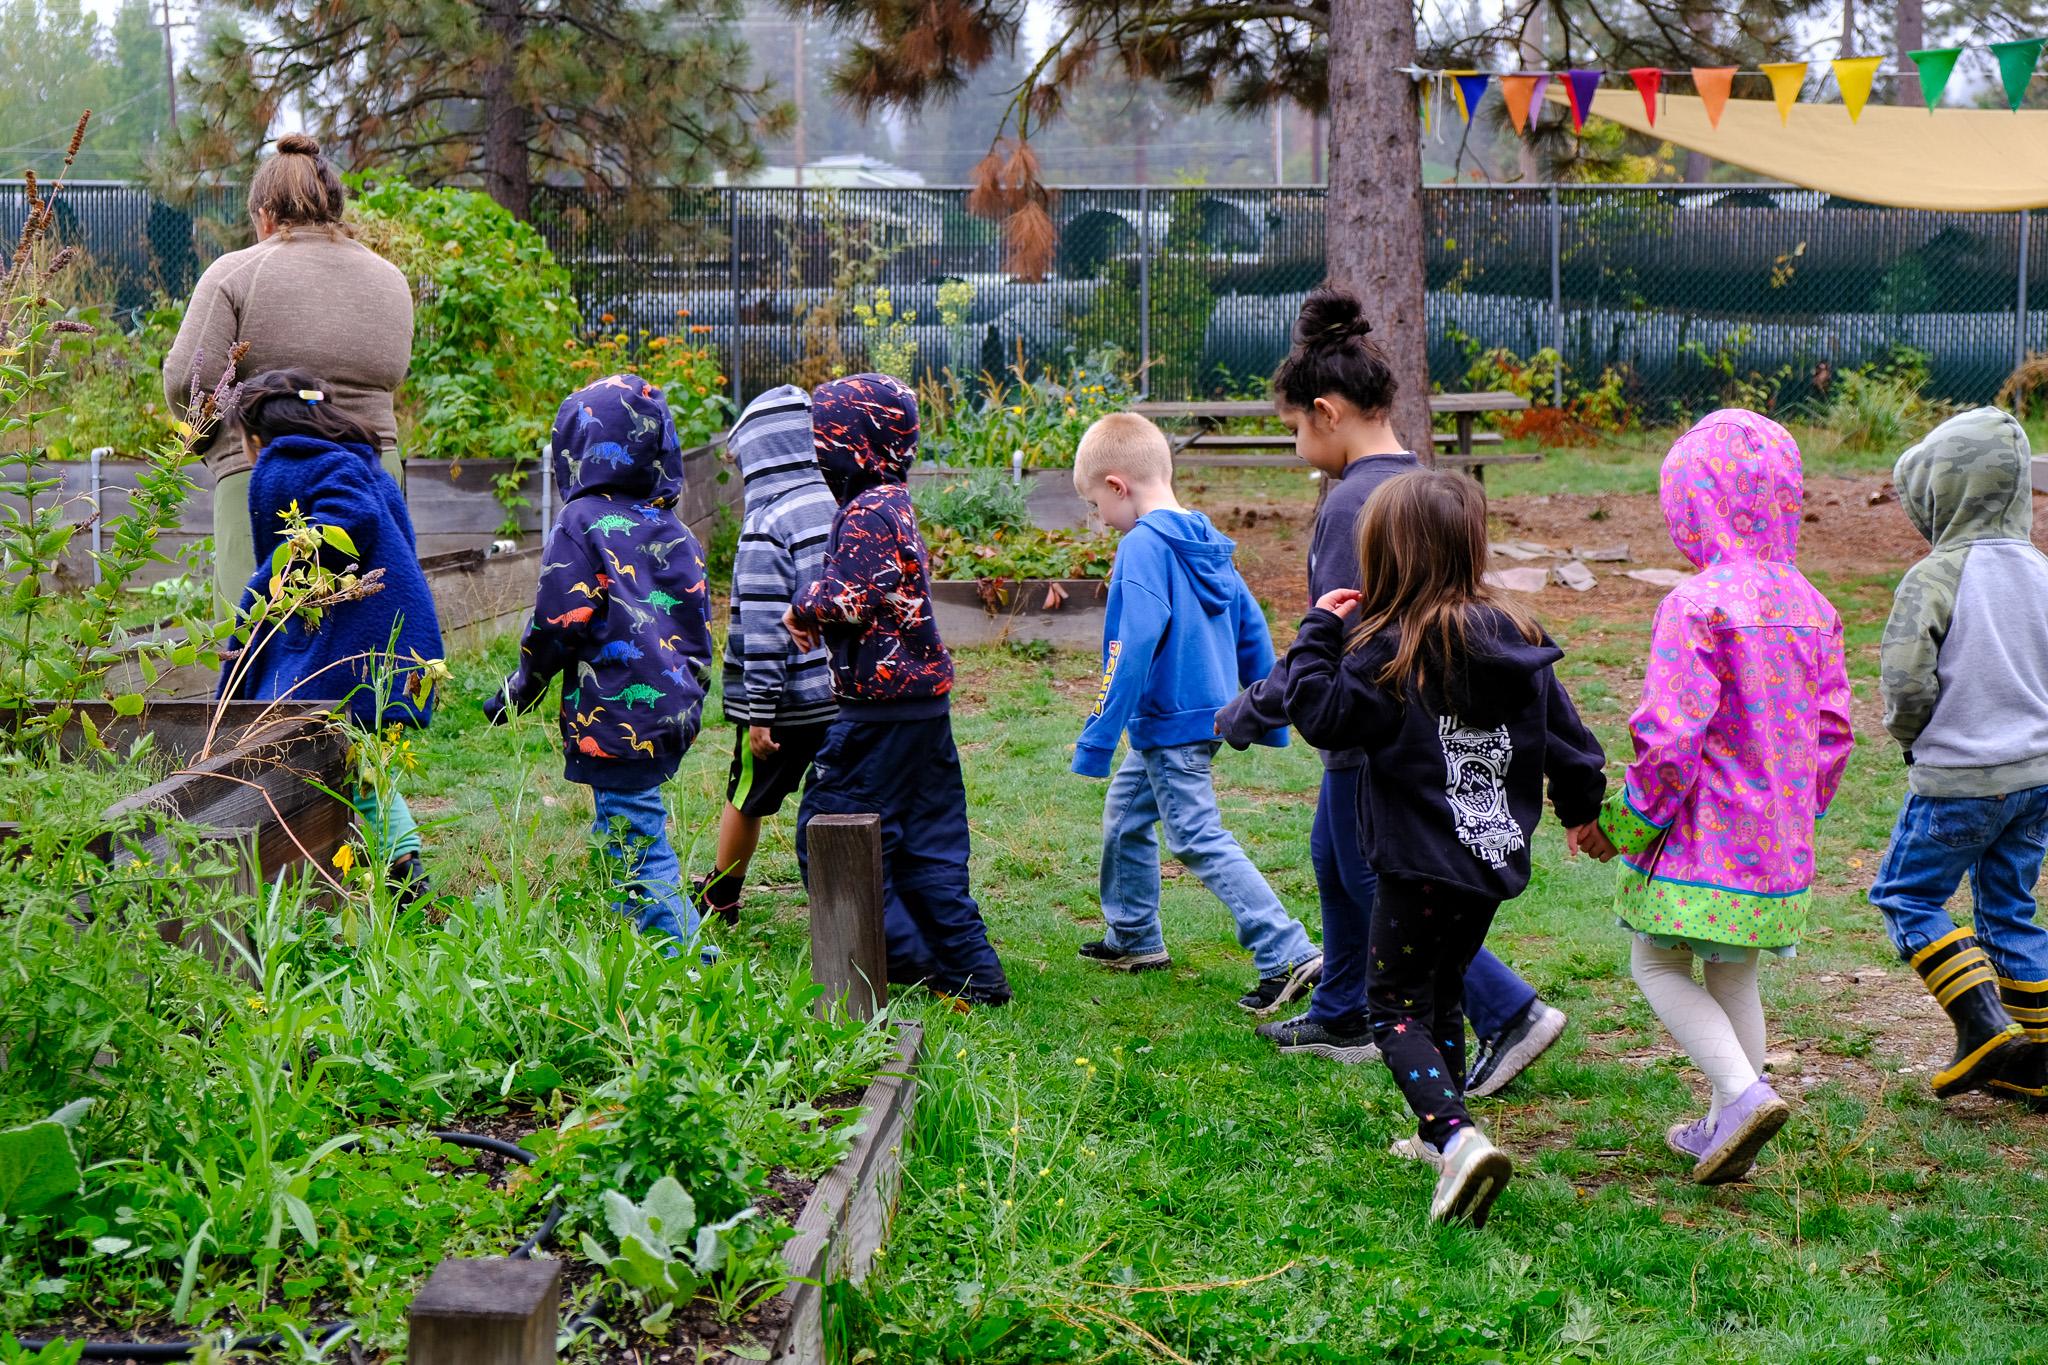 kinders walk to the garden